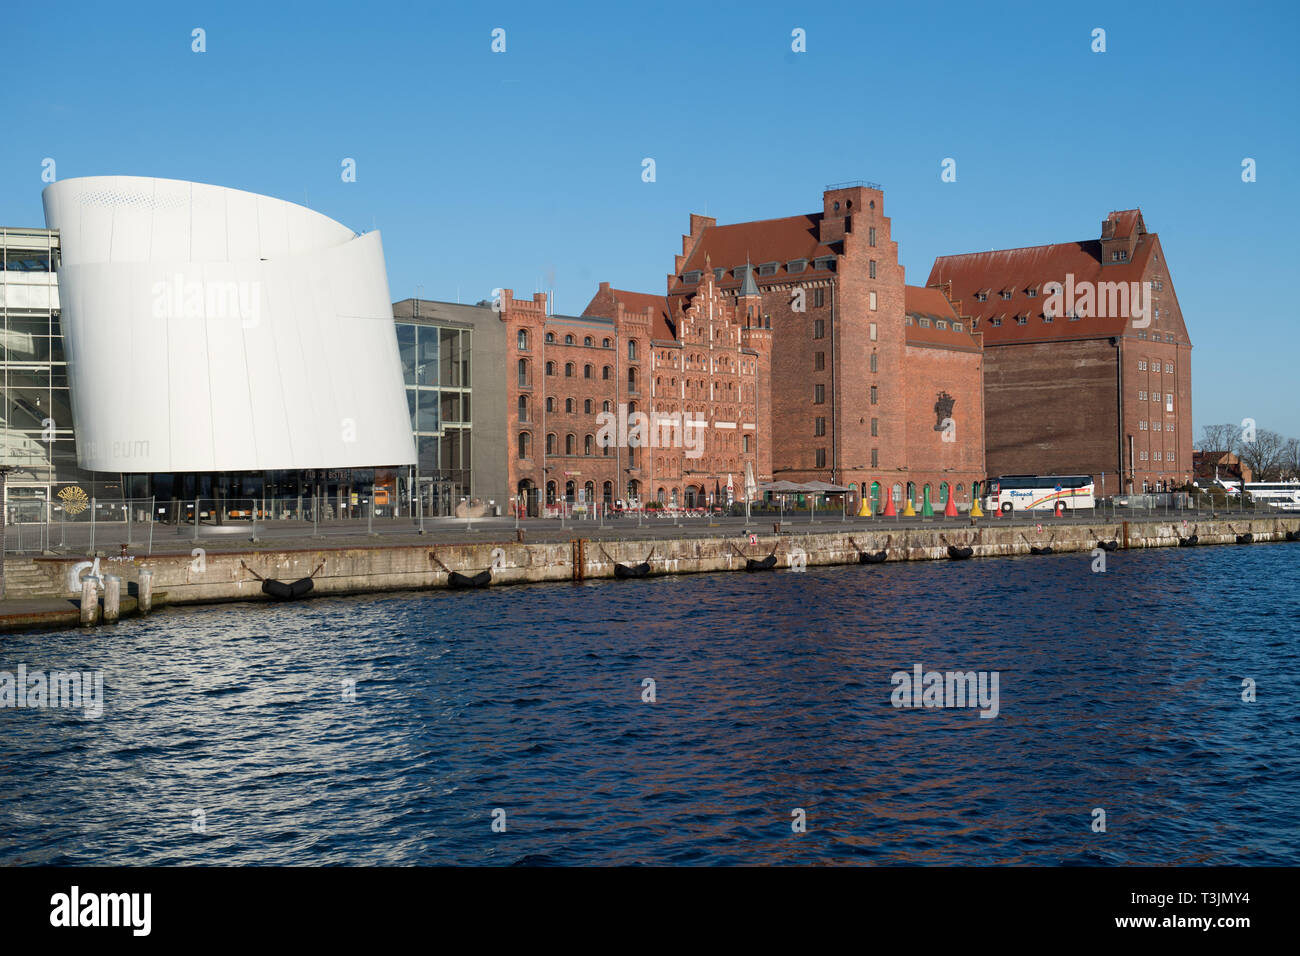 10 avril 2019, Mecklembourg-Poméranie-Occidentale, l'Ozeaneum Stralsund : et le stockage, prises par beau temps dans le port. Stralsund est de recevoir 10,35 millions d'euros de la part du gouvernement fédéral pour le réaménagement du quai en face de l'Ozeaneum. Les fonds viennent du "Développement urbain national du programme de financement des projets du Ministère fédéral de l'intérieur. L'argent sera utilisé pour remettre en état les installations de quai dans le centre-ville de Stralsund, qui est classé comme site du patrimoine mondial de l'UNESCO, et donc également servir de phare pour l'Ozeaneum. Banque D'Images